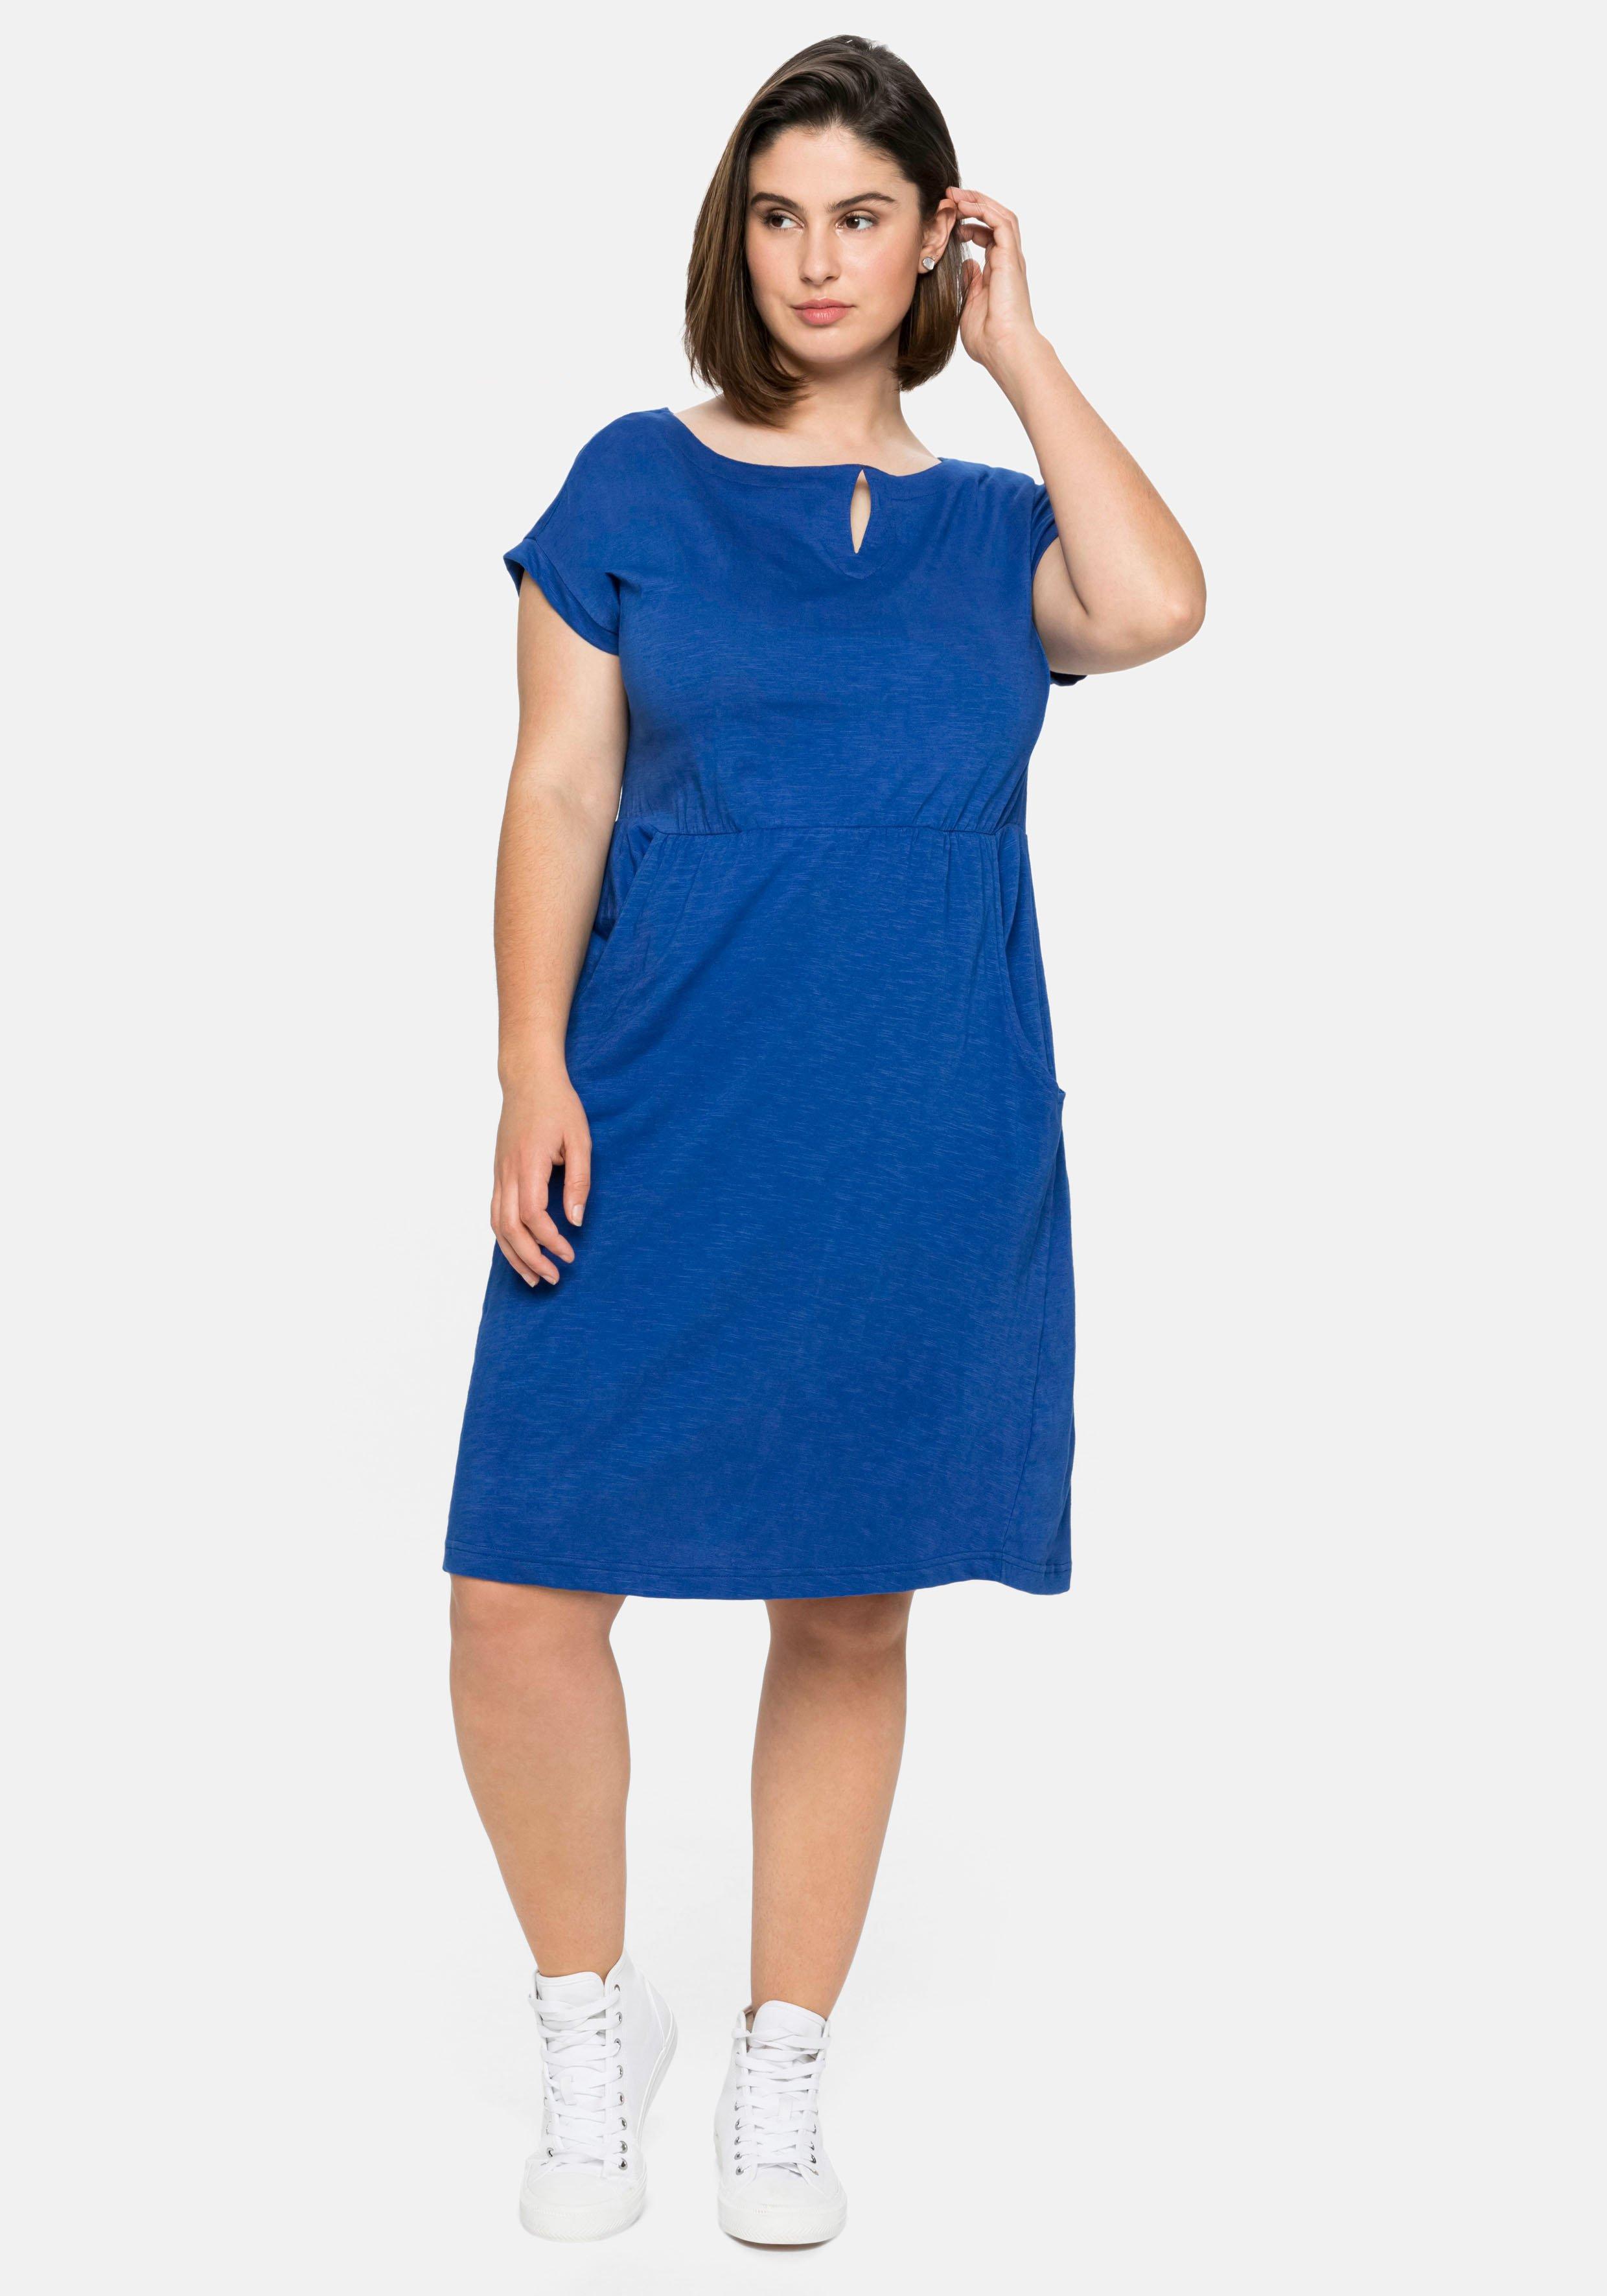 Jerseykleid mit weitem Ausschnitt und Taschen - royalblau | sheego